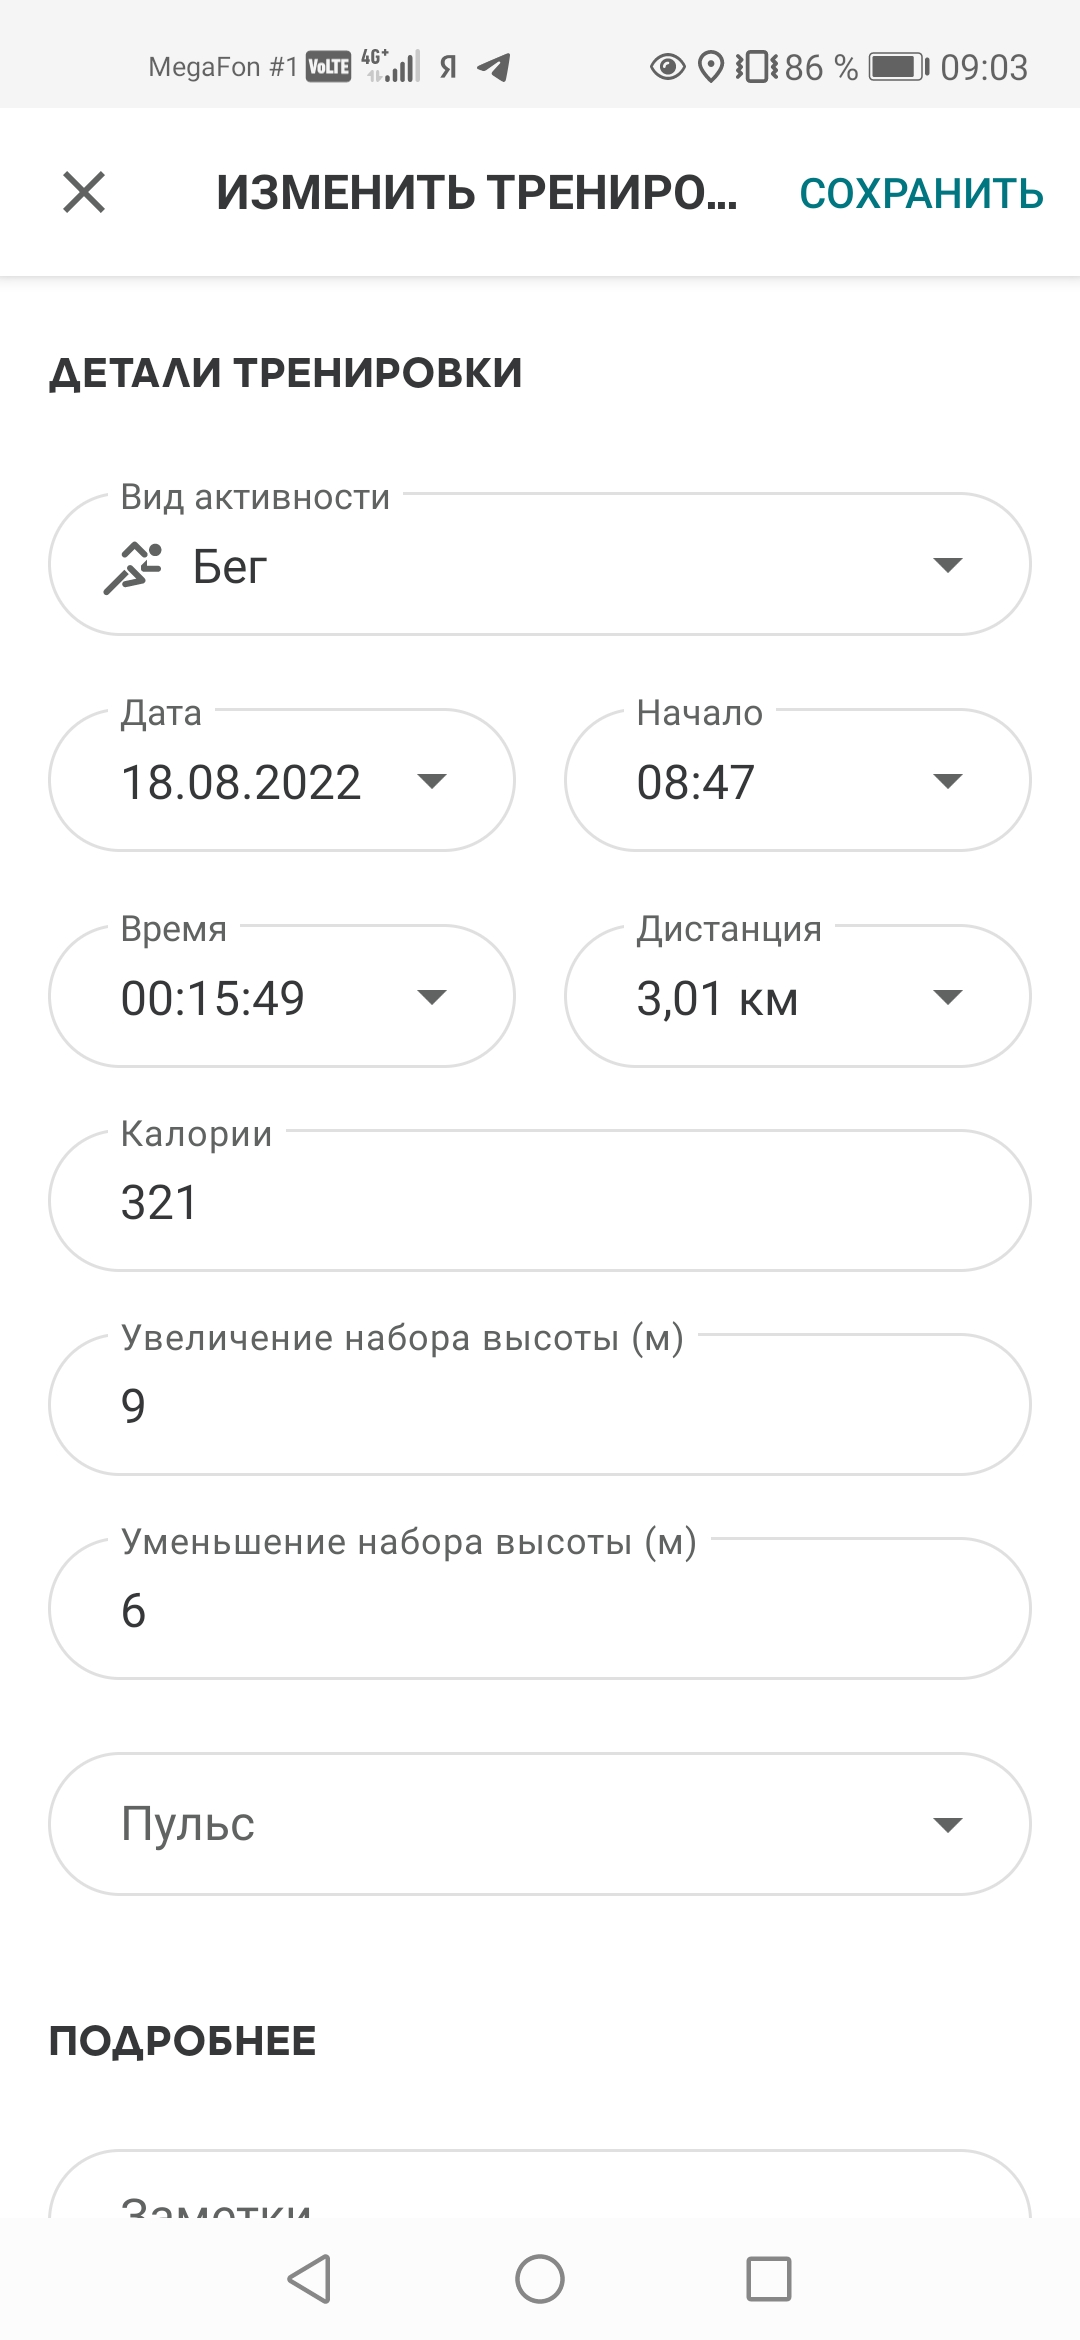  Загрузка от 18.08.2022 00:00:00 Максимов Сергей 